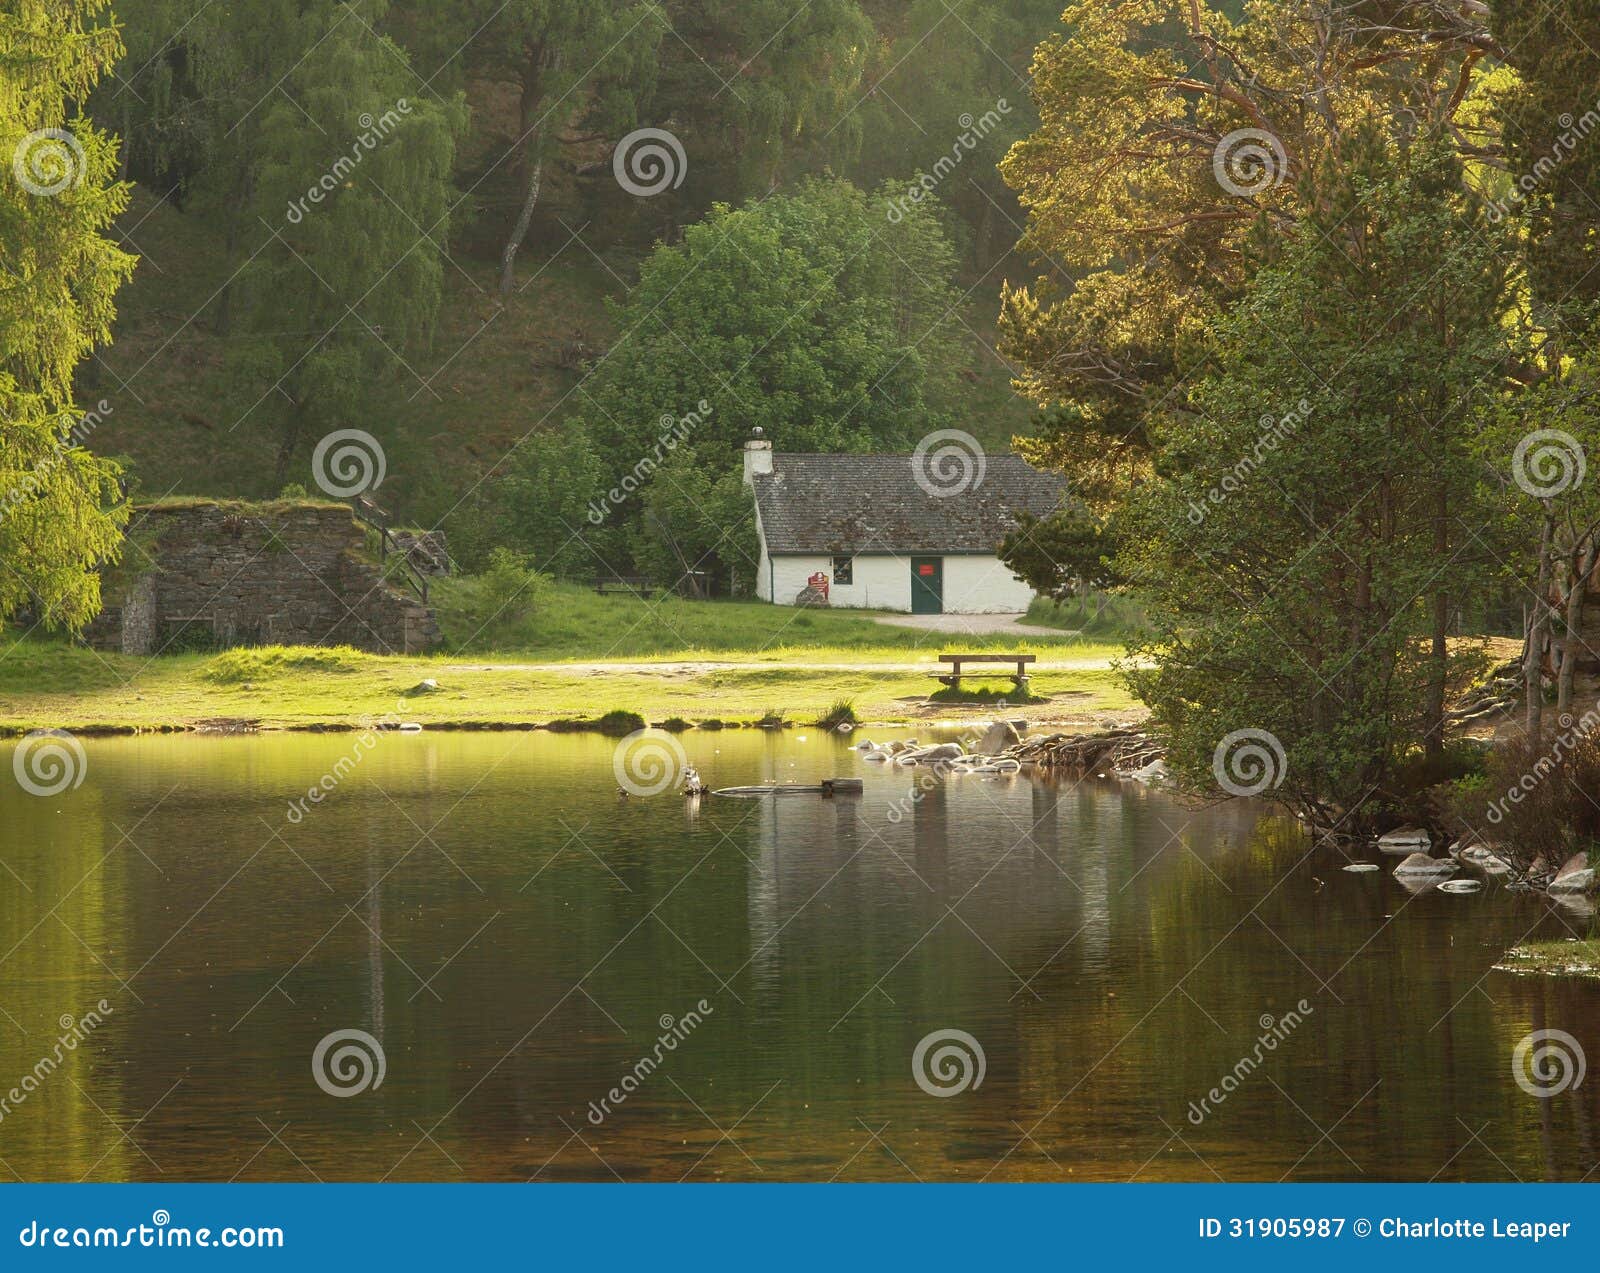 white cottage on lake, scotland